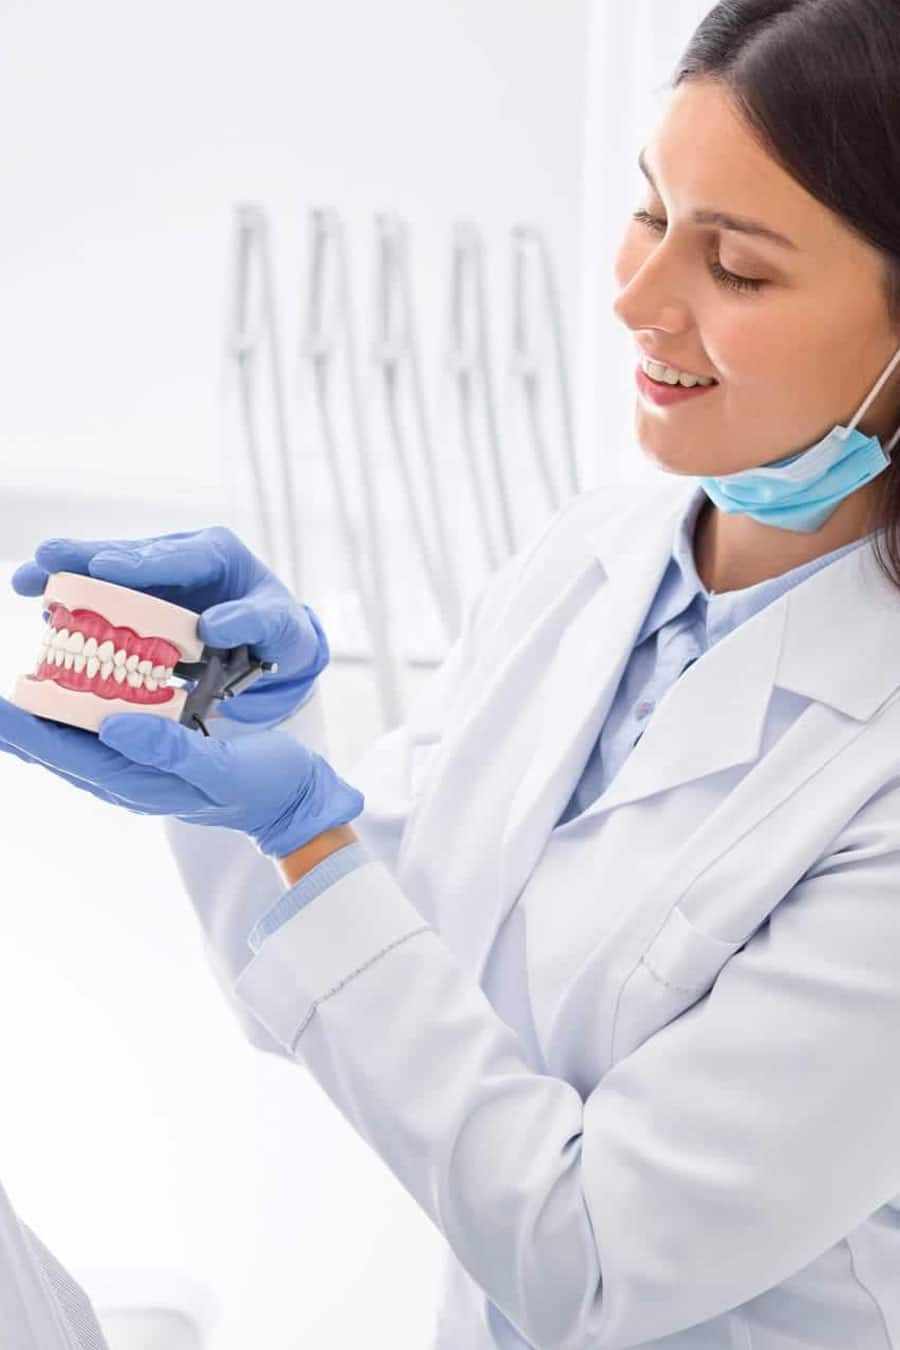 dentista mostrando modelo de dentadura